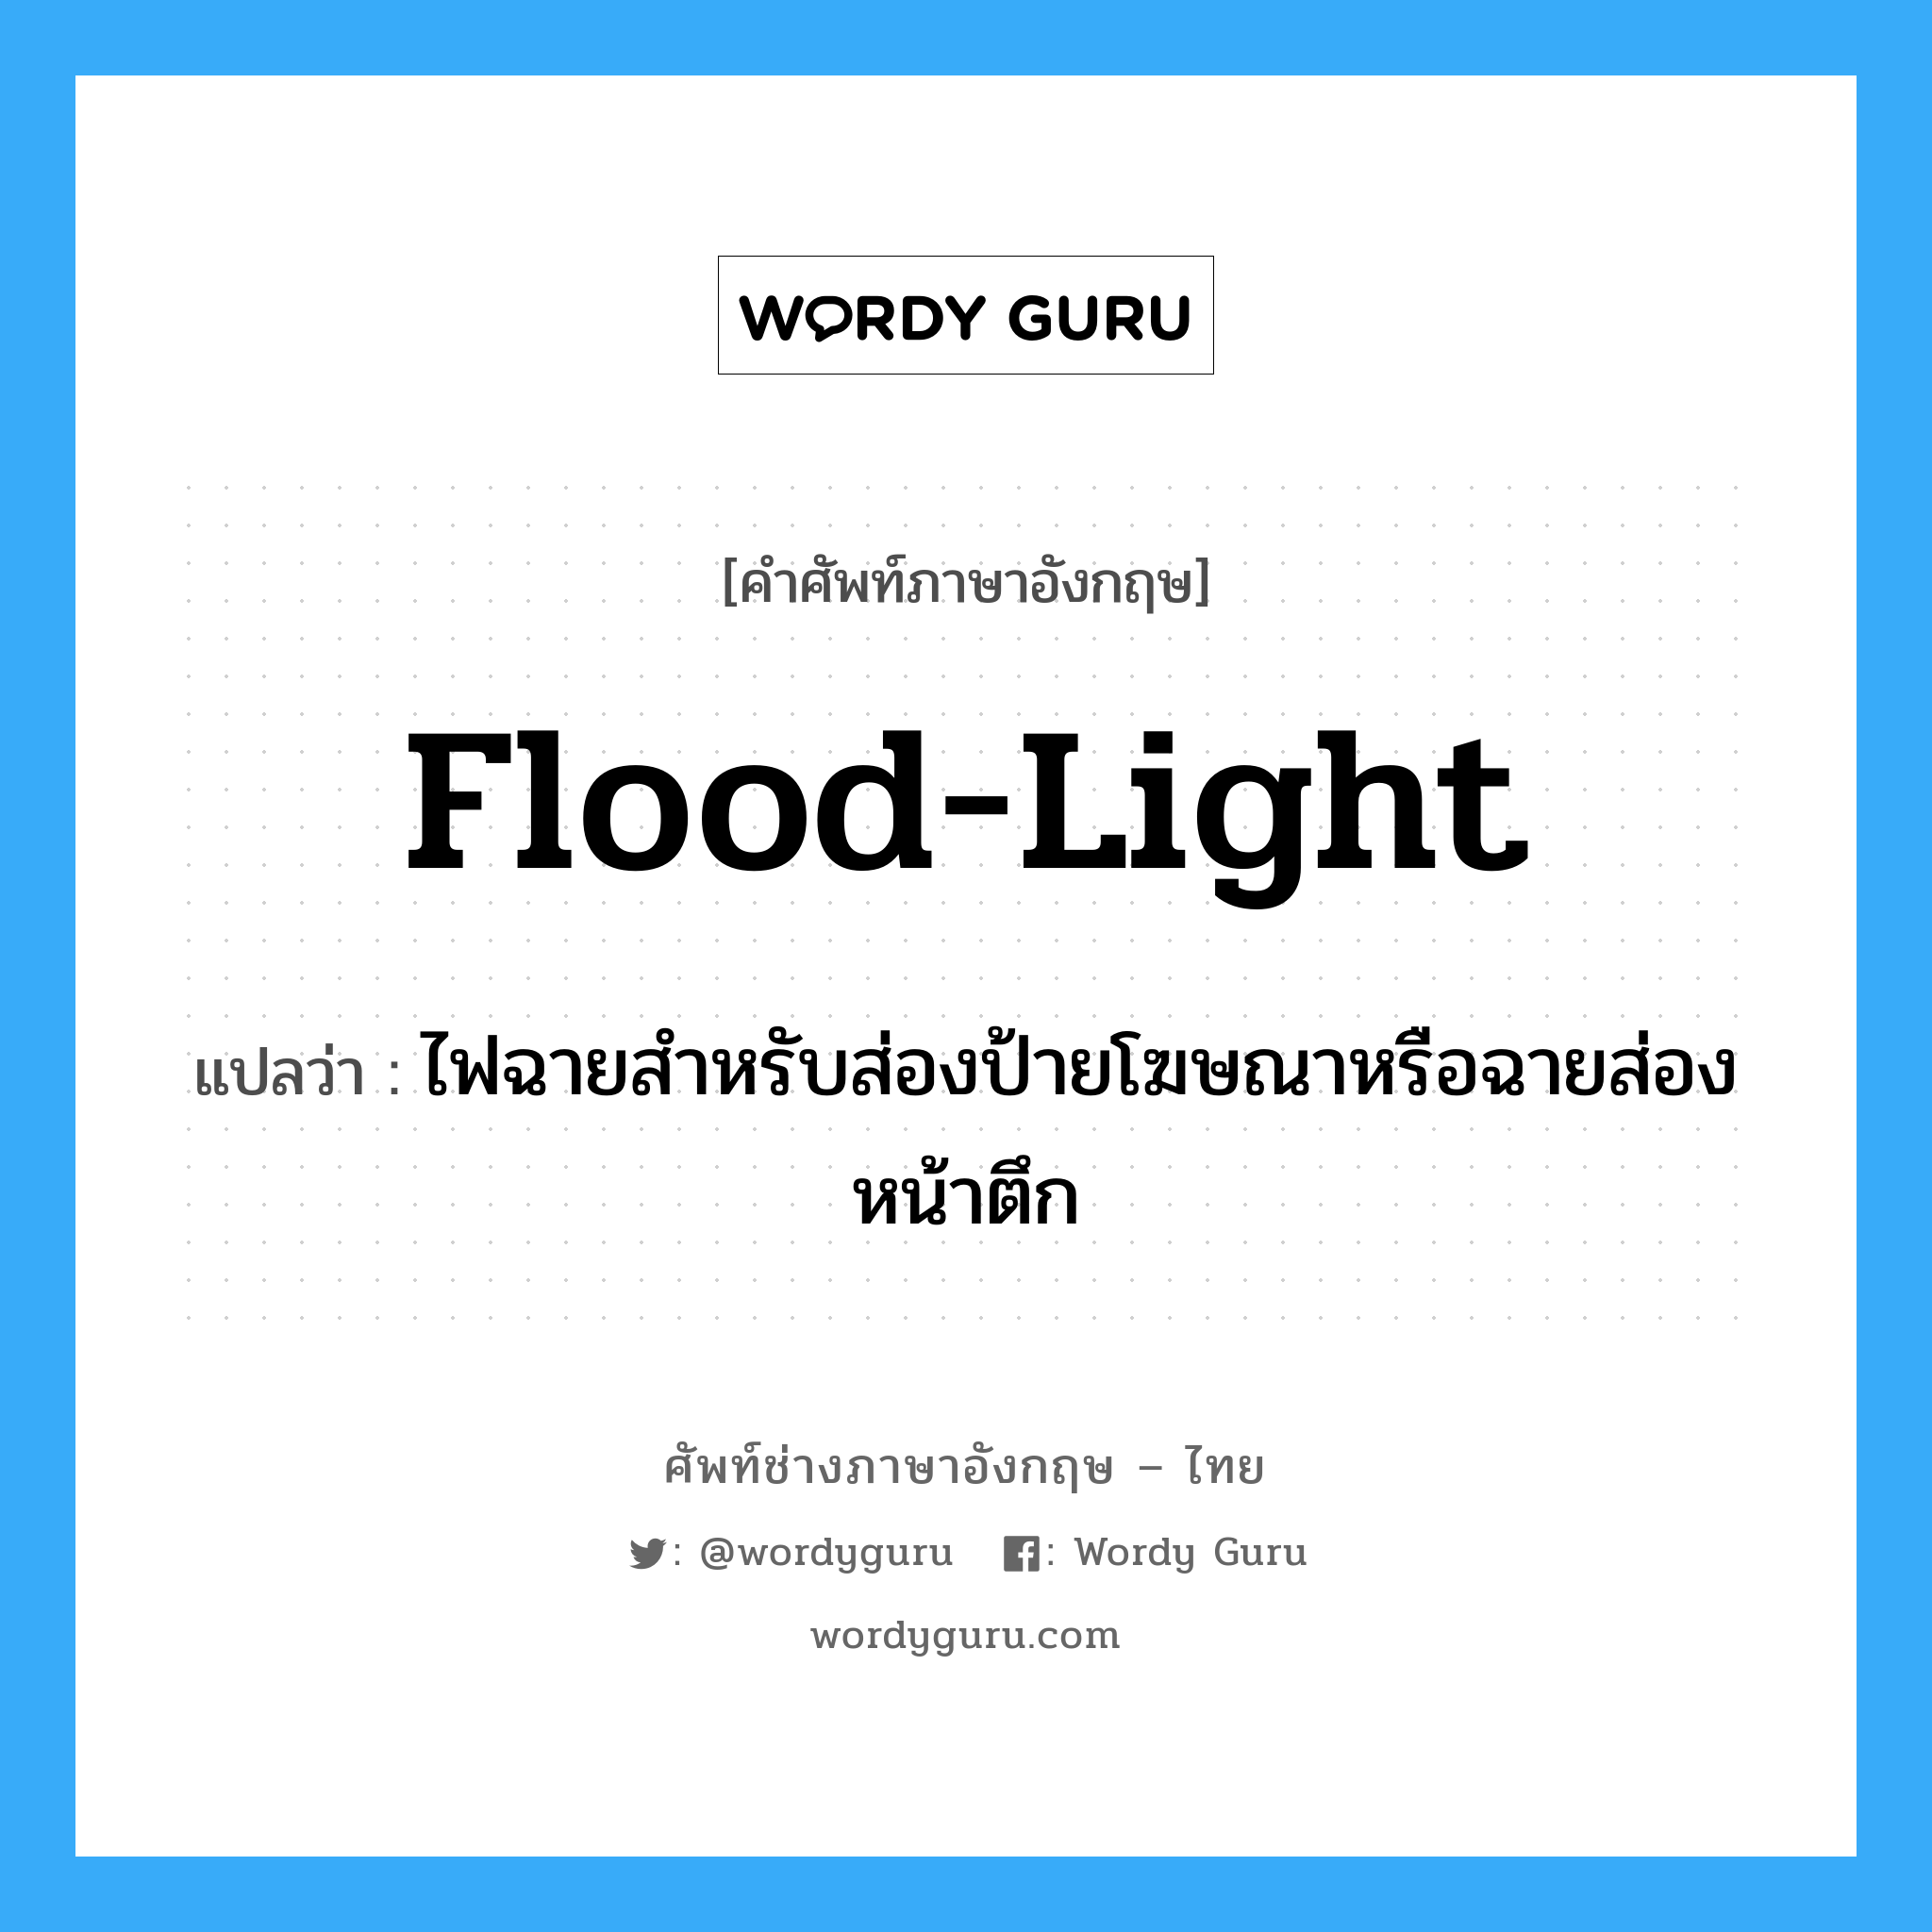 flood-light แปลว่า?, คำศัพท์ช่างภาษาอังกฤษ - ไทย flood-light คำศัพท์ภาษาอังกฤษ flood-light แปลว่า ไฟฉายสำหรับส่องป้ายโฆษณาหรือฉายส่องหน้าตึก